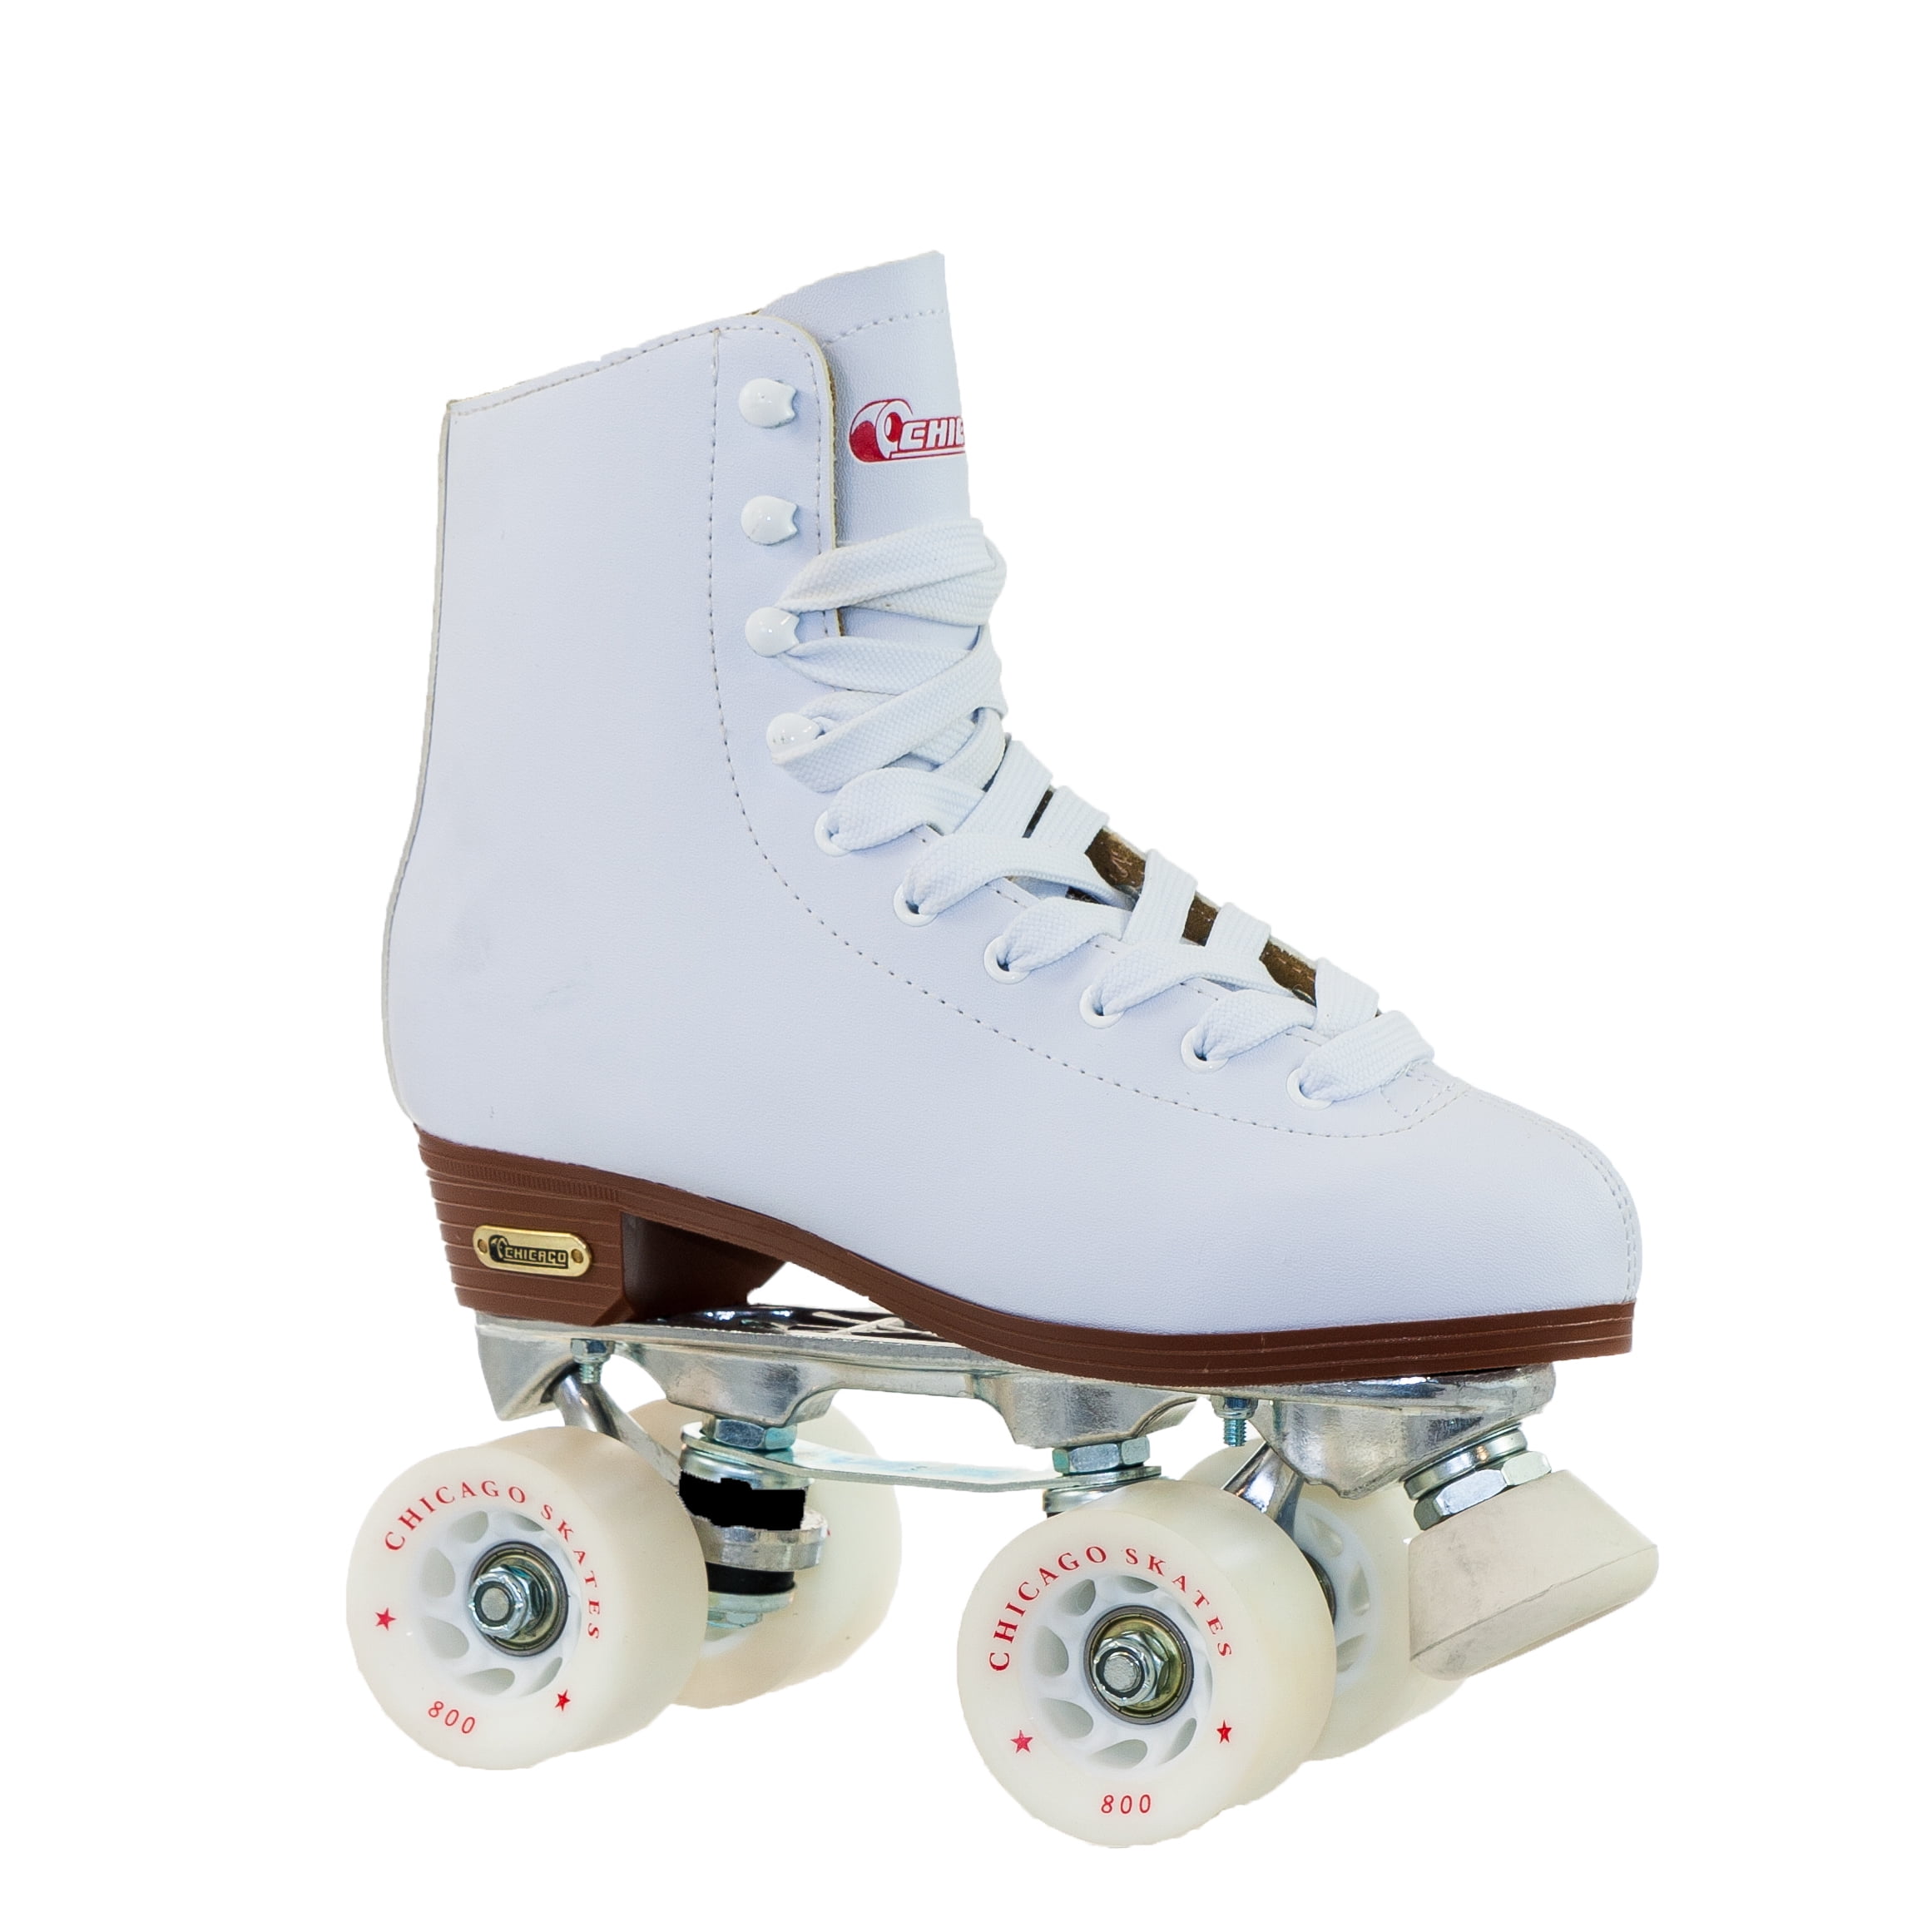 Chicago Skates Crs190003 Girls Rink Skate Size 3 White for sale online 